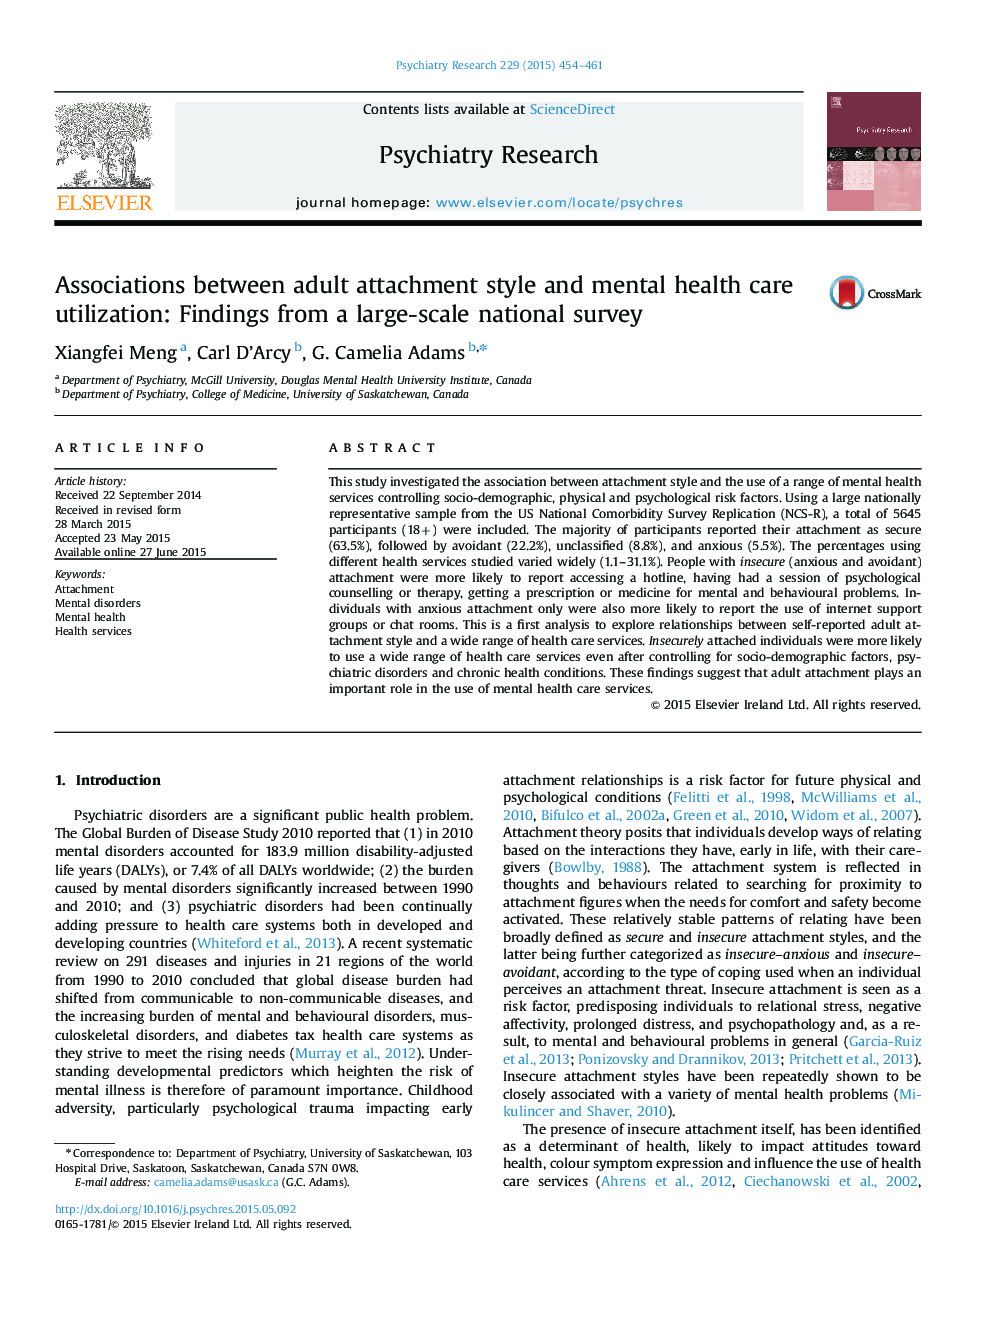 ارتباط بین سبک دلبستگی بالغ و استفاده از مراقبت های بهداشتی روان: یافته های یک بررسی ملی در مقیاس بزرگ 